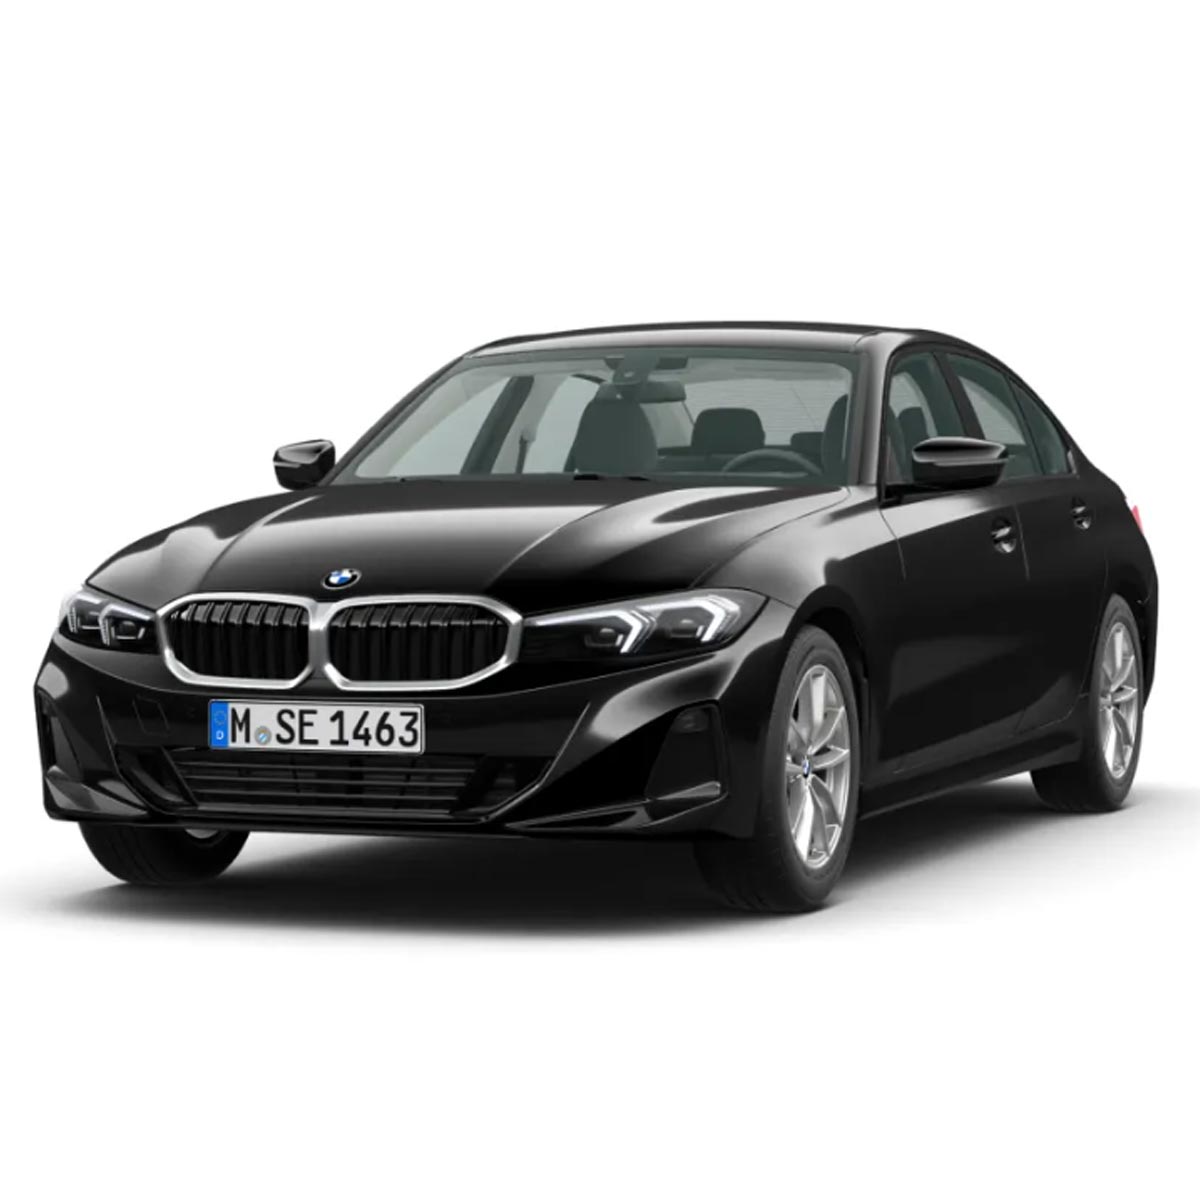 Schwarz GmbH: BMW Fahrzeuge, Services, Angebote u.v.m.